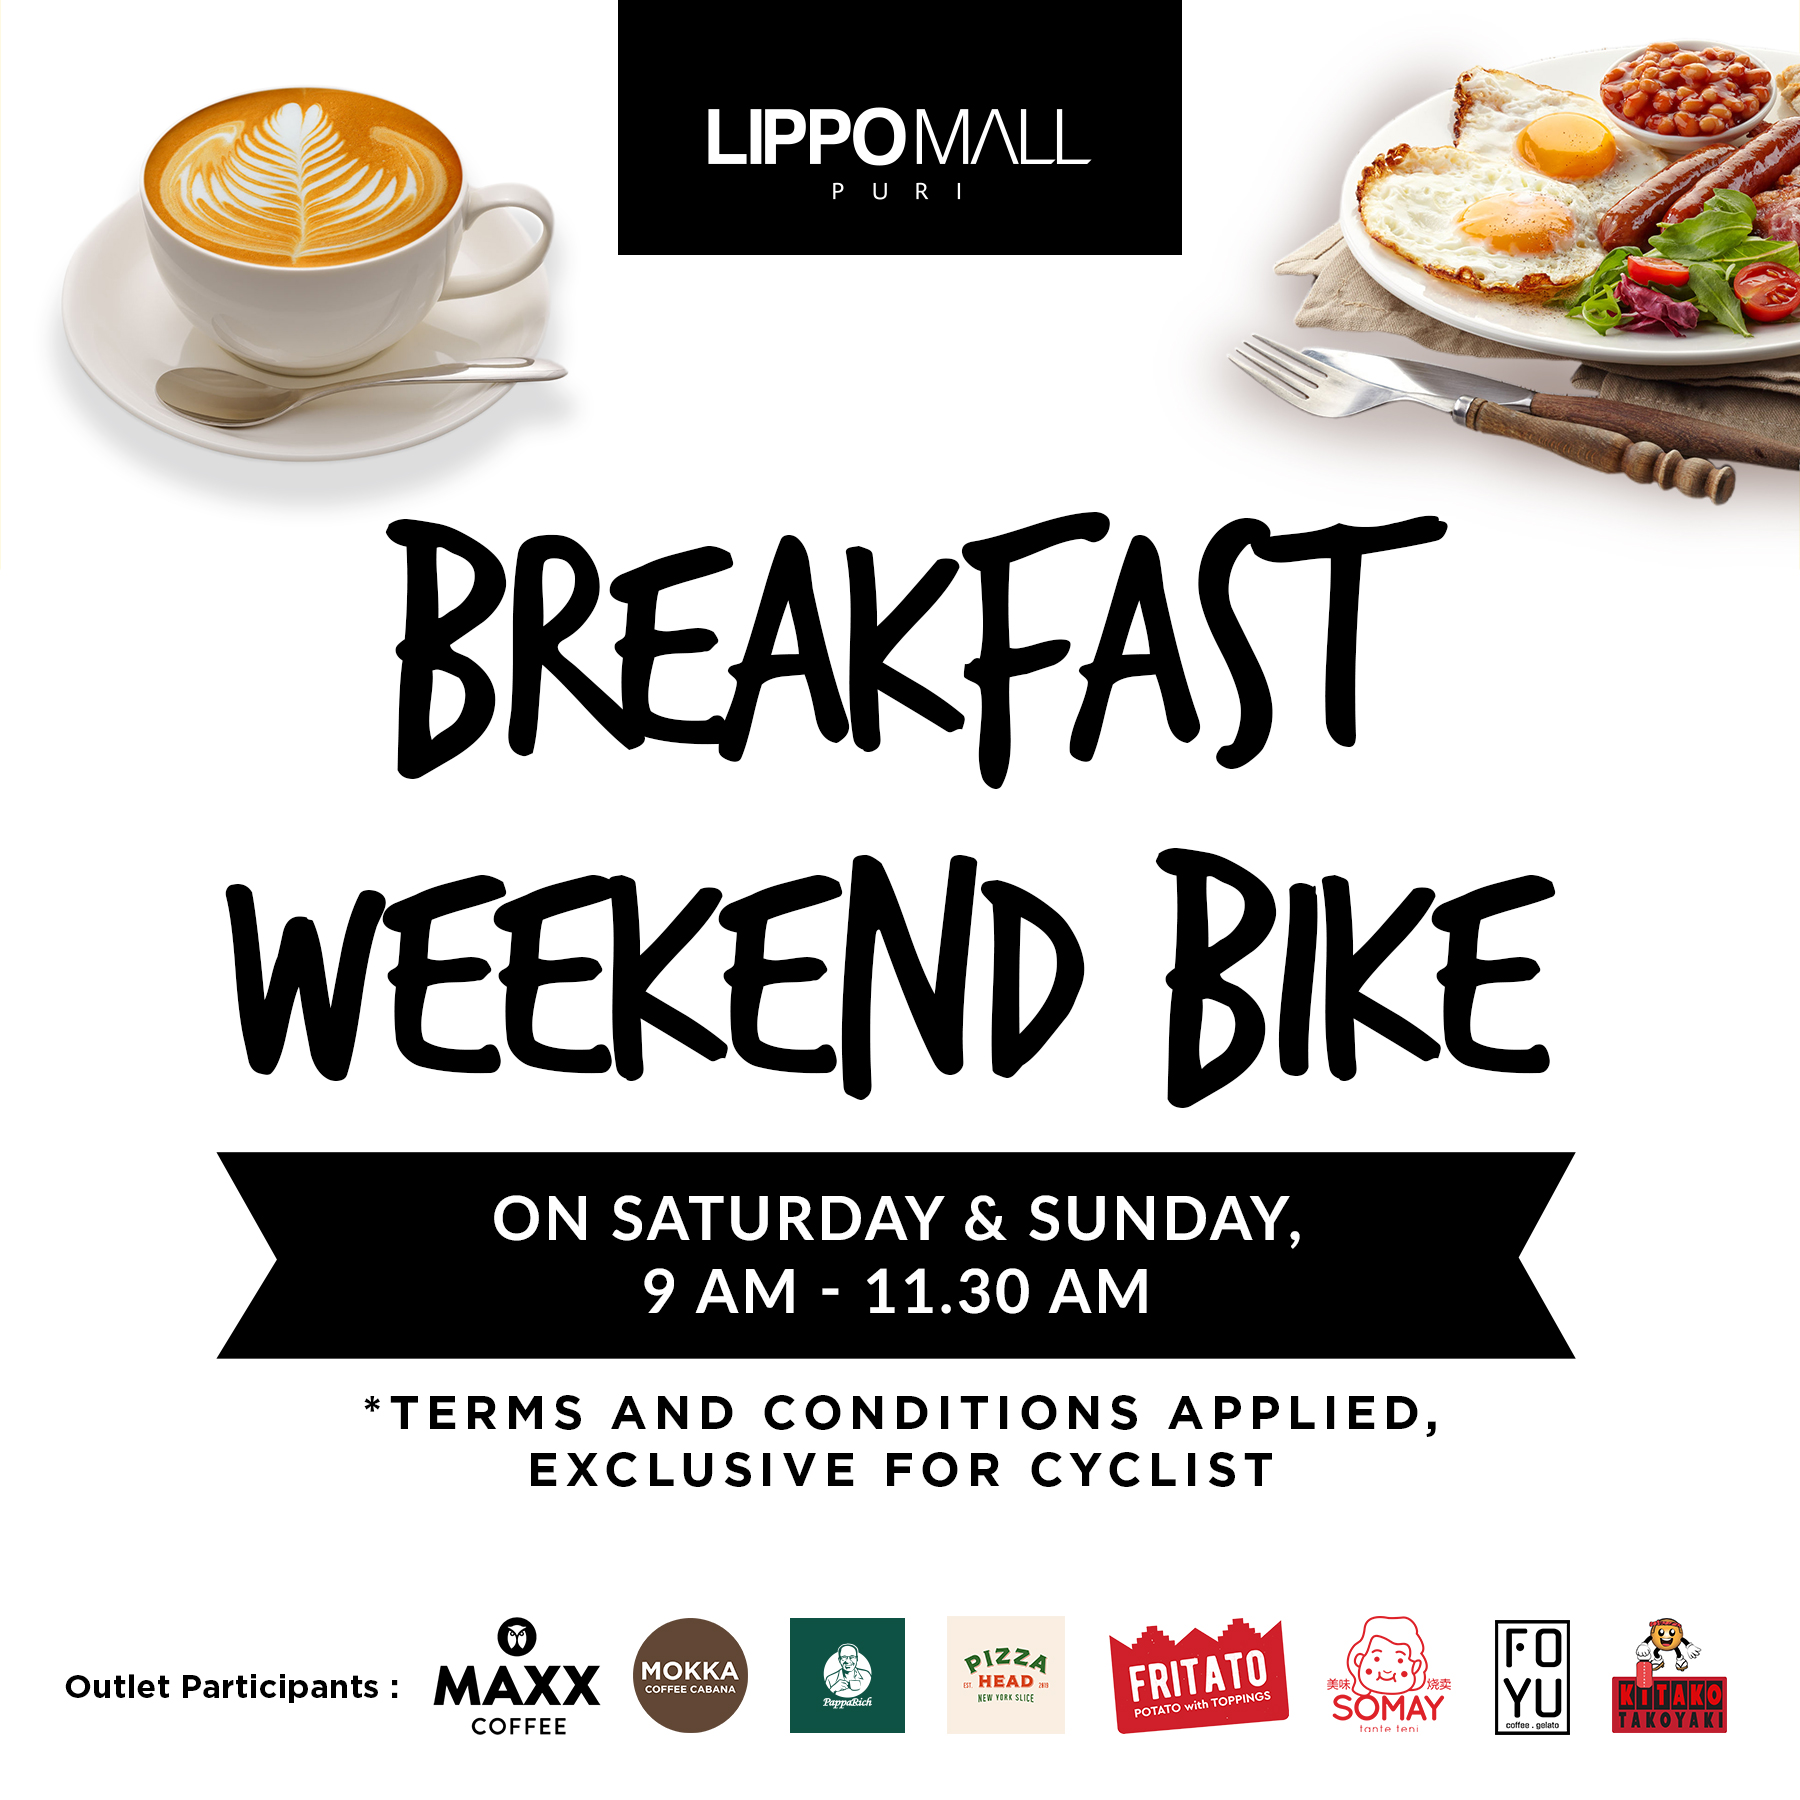 Bike & Breakfast Promo in coffee walk lippo mall puri st. moritz